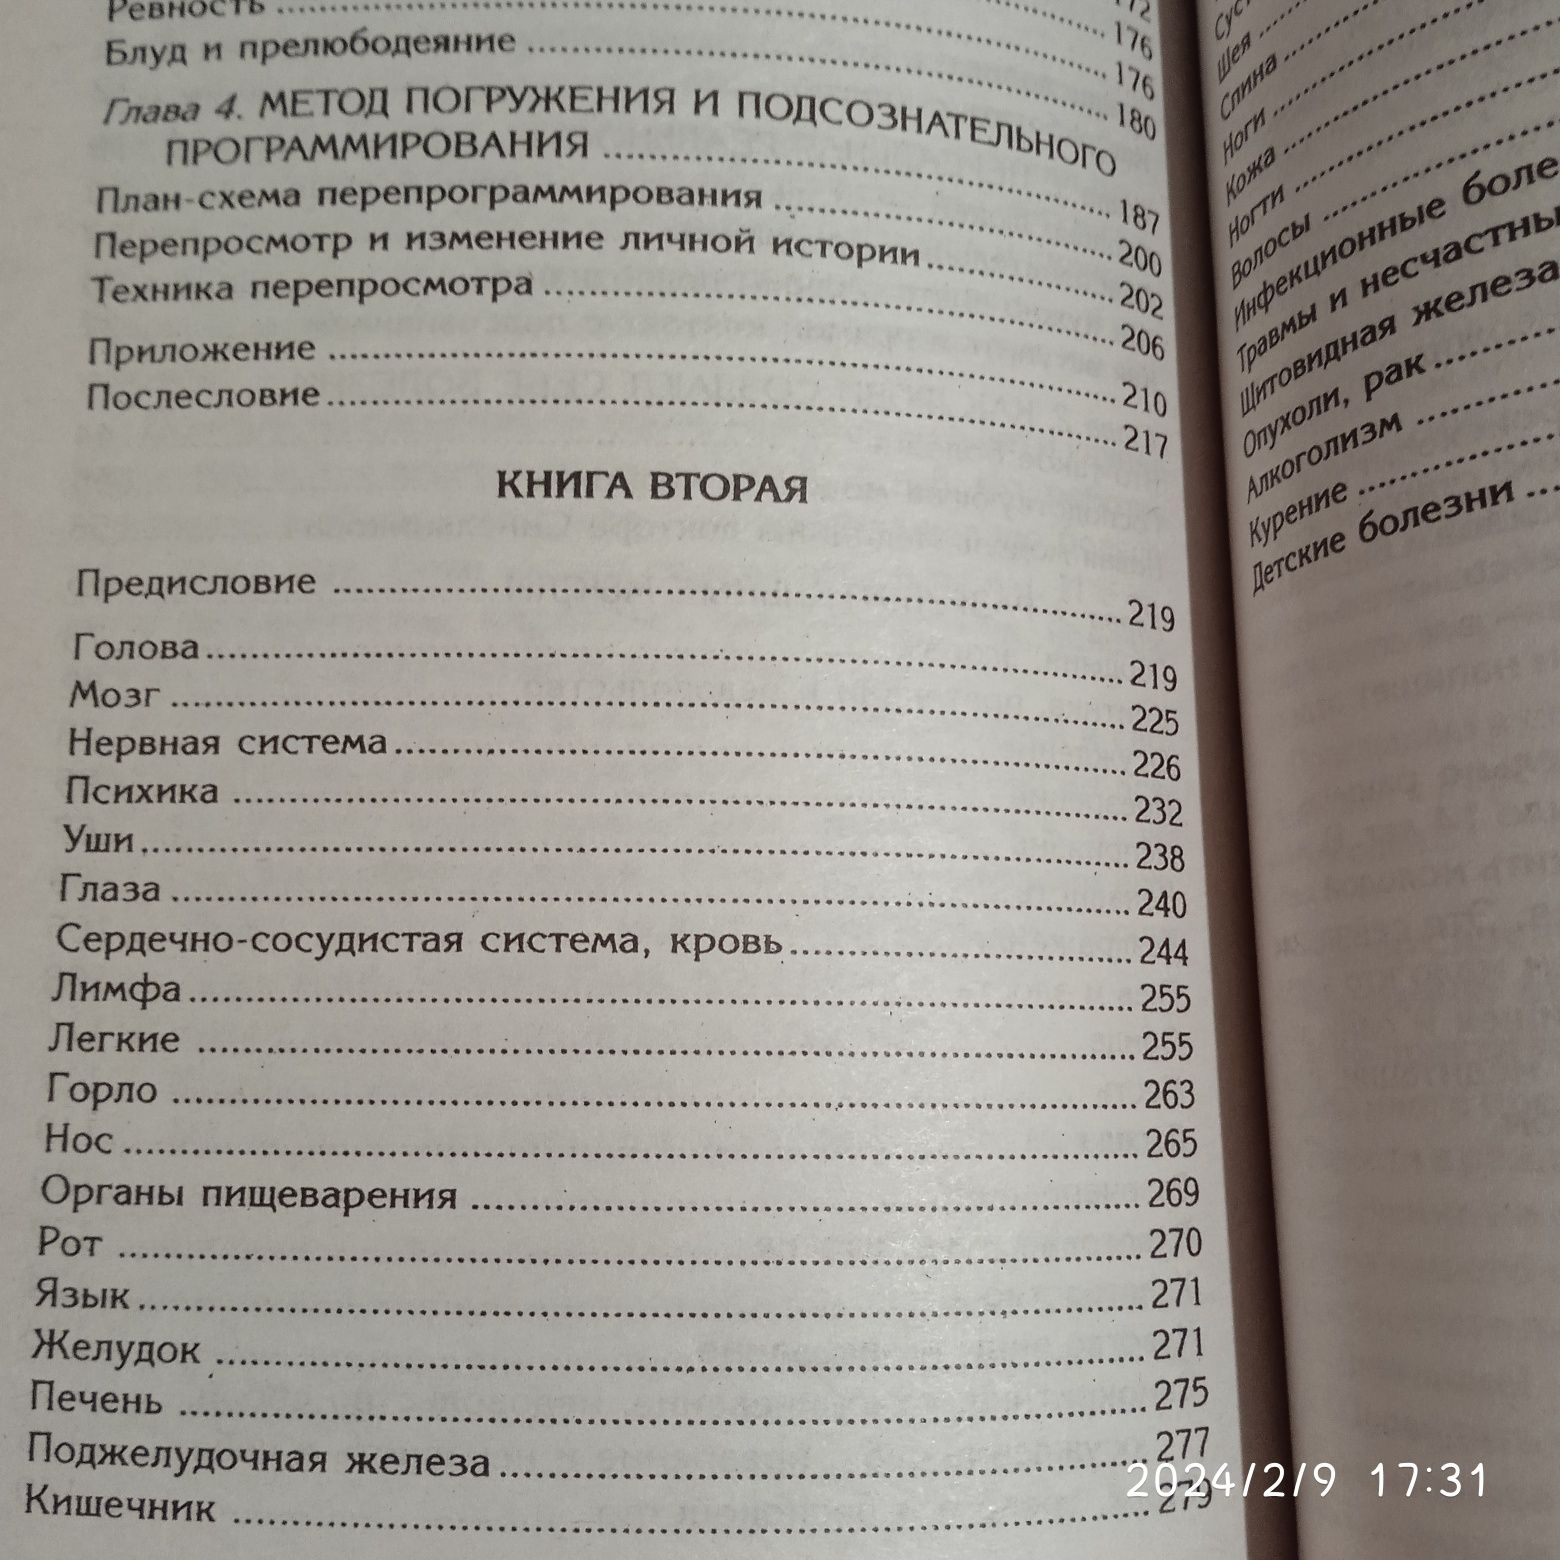 Валерий Синельников/ разные книги